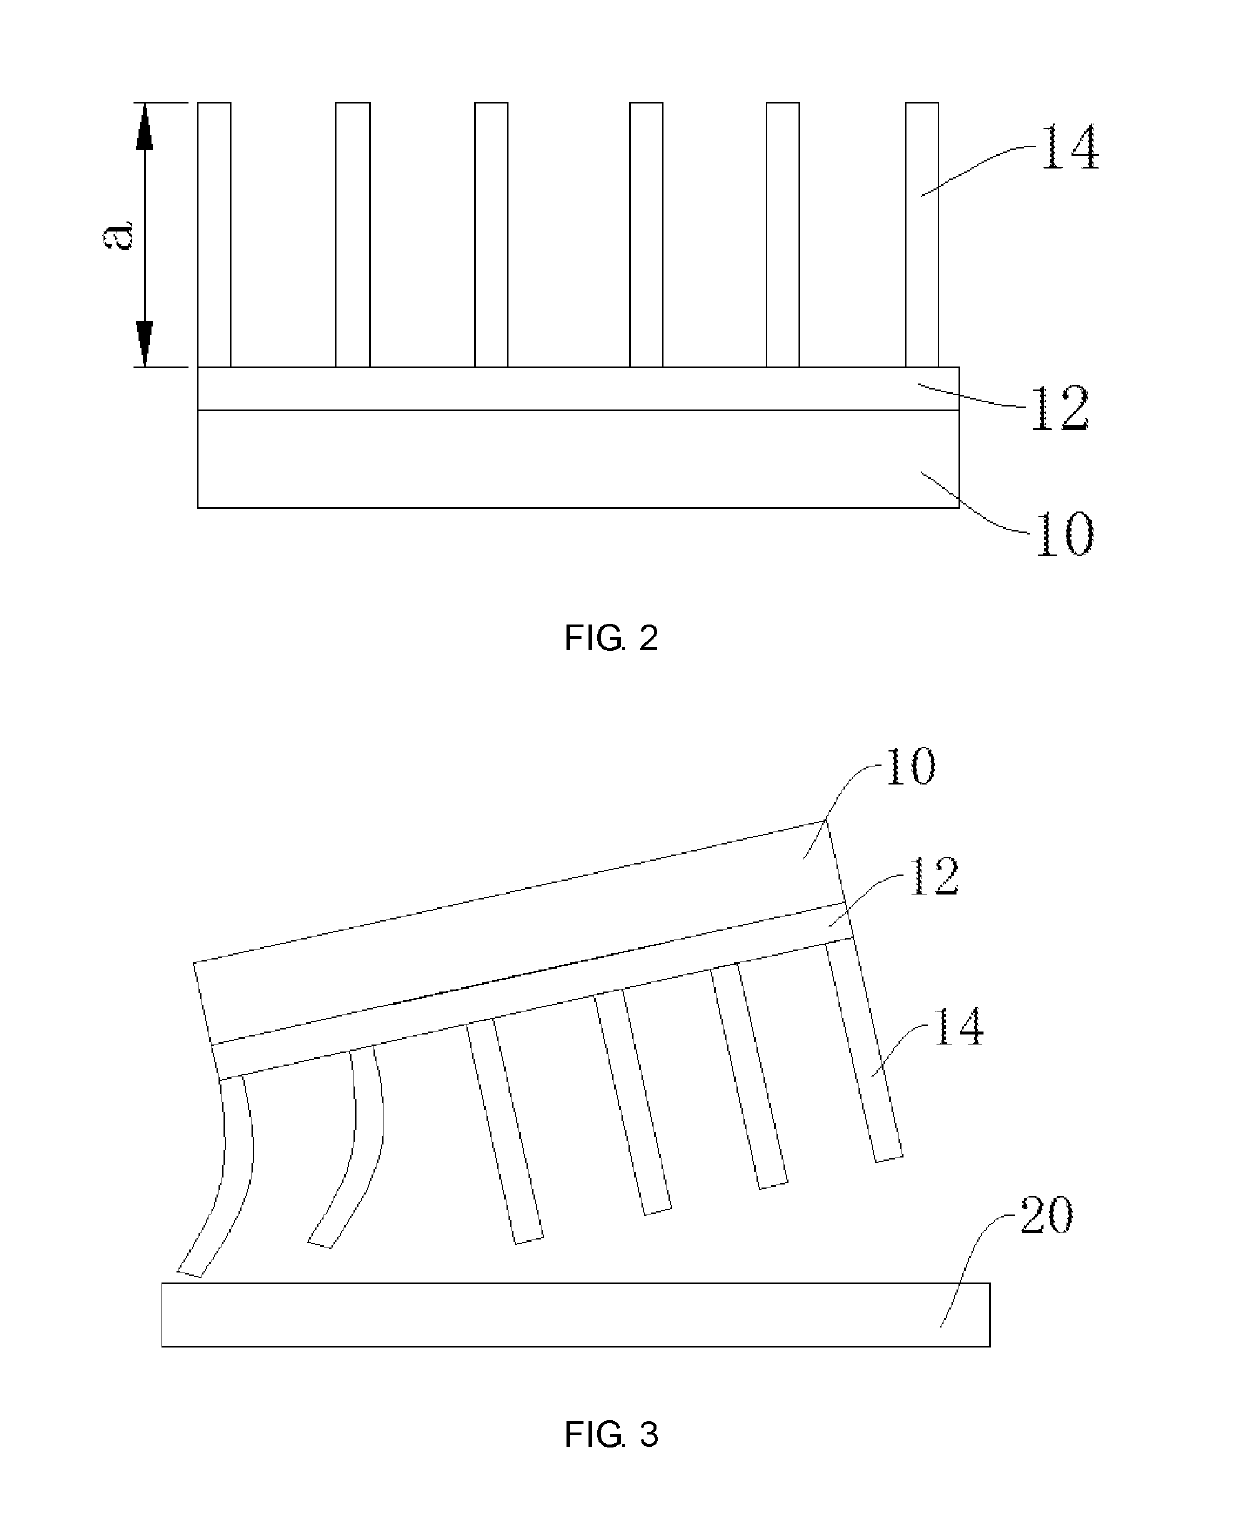 Manufacturing method of organic thin film transistor